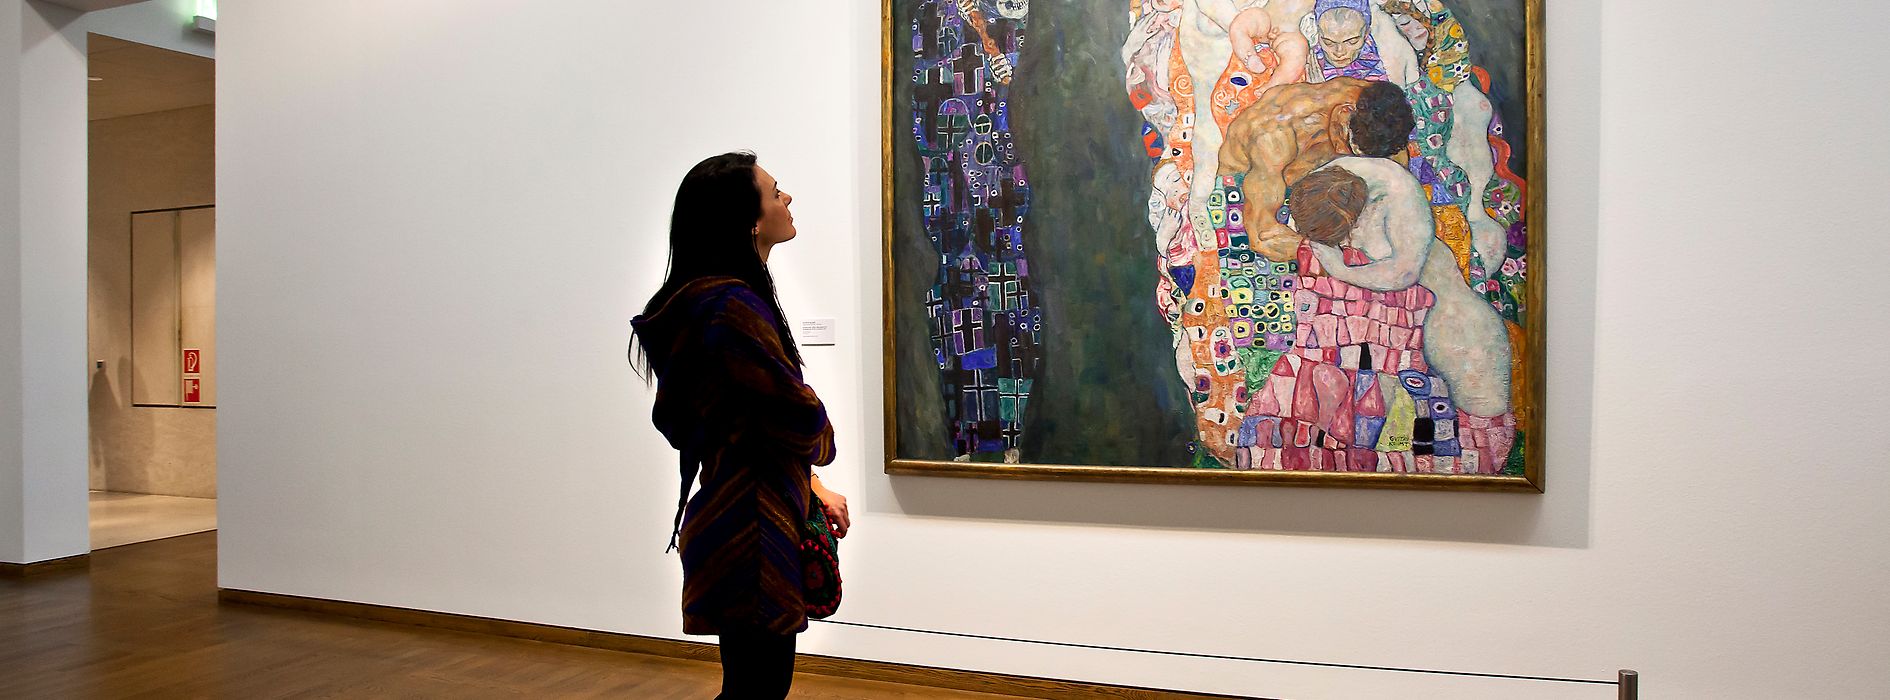 Tableau « Vie et mort » de Gustav Klimt au Musée Musée Leopold